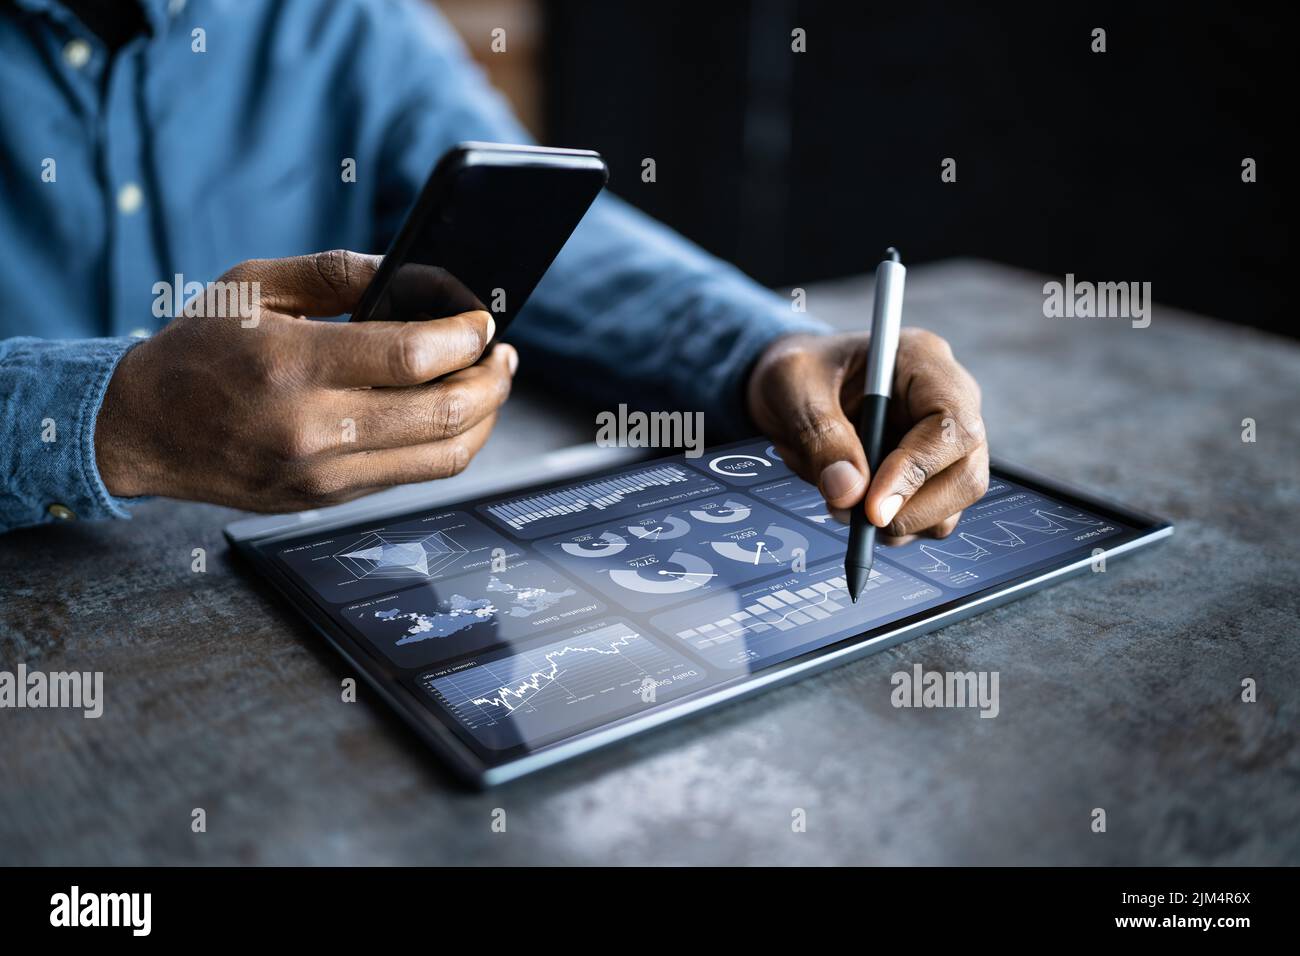 Analyste financier utilisant la technologie analytique sur tablette Banque D'Images